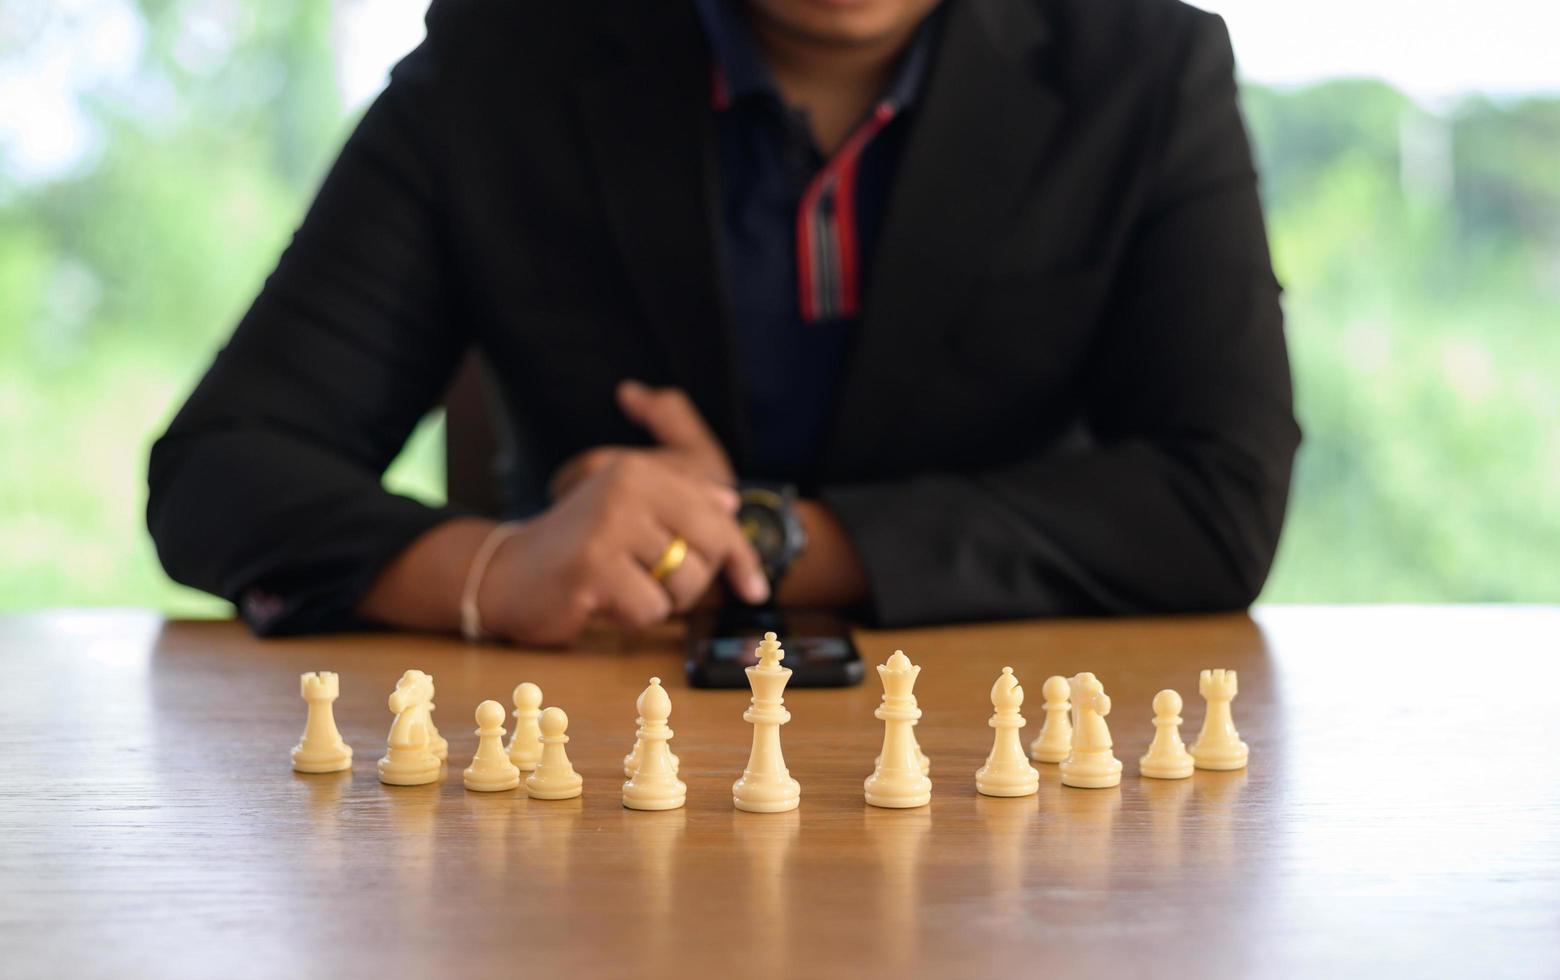 innovation hyvling och hyvling aning schack konkurrens, företag strategi med finansiell förbindelse linje bakgrund. utmaning och tänkande slåss begrepp foto